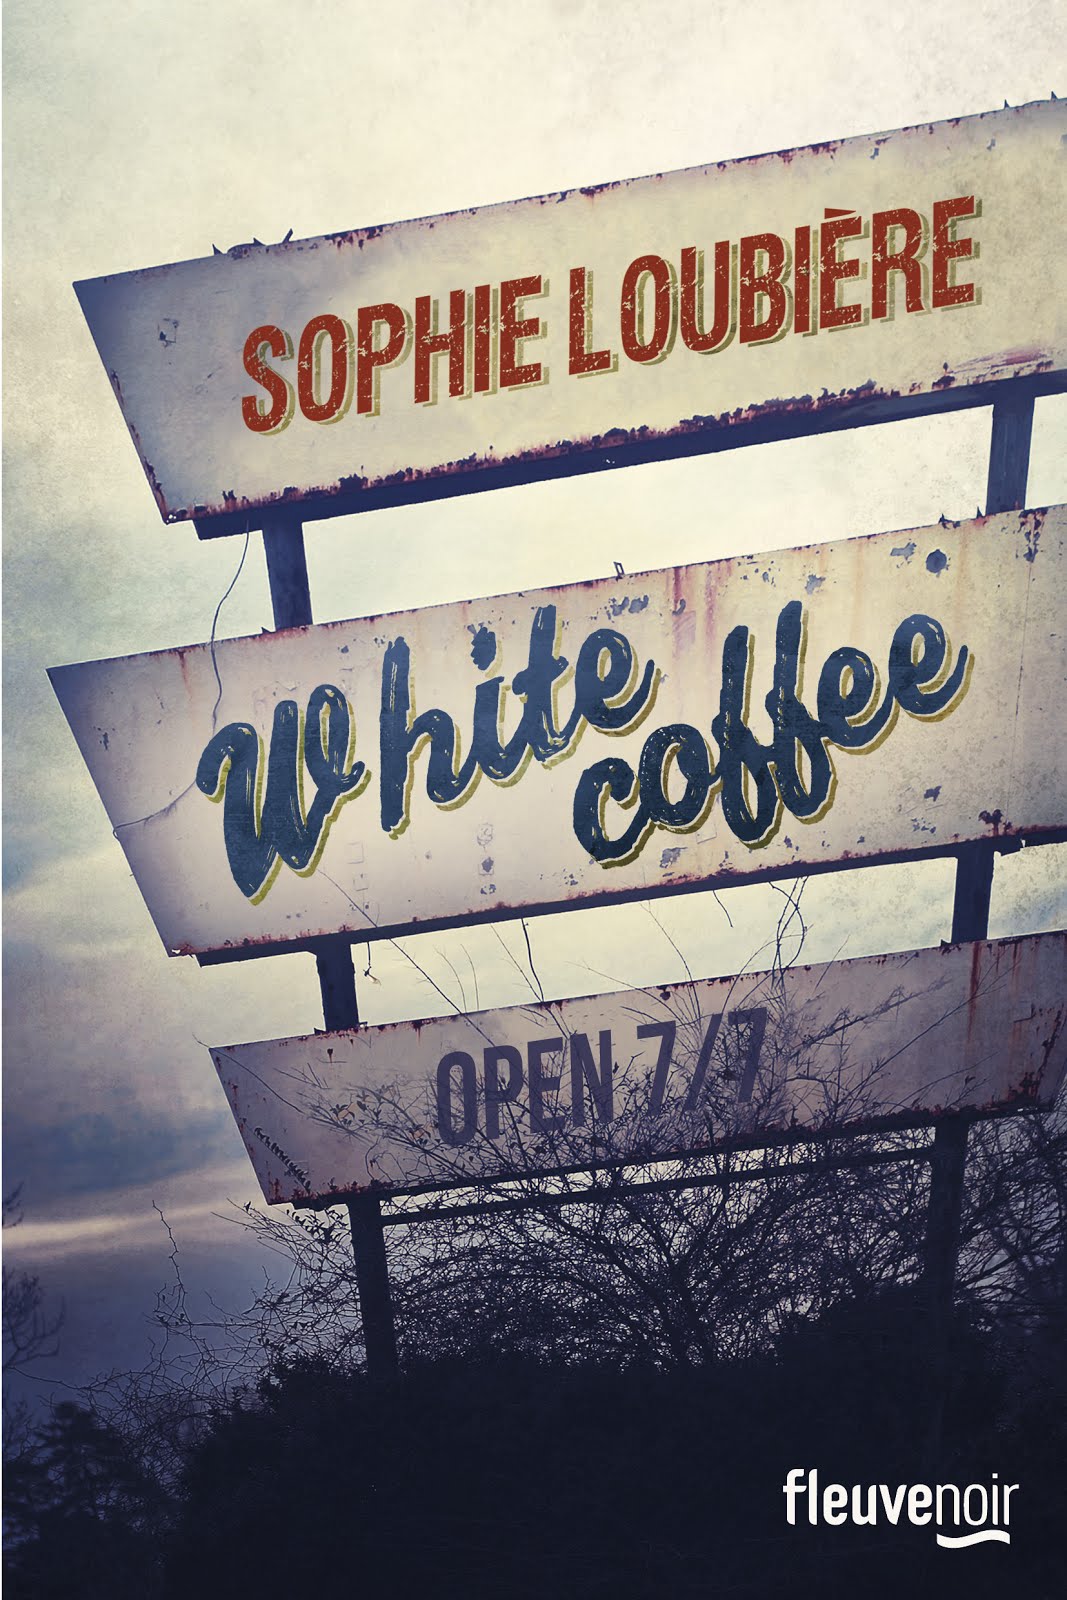 Cliquez sur l'image pour rejoindre le blog consacré à "White Coffee"